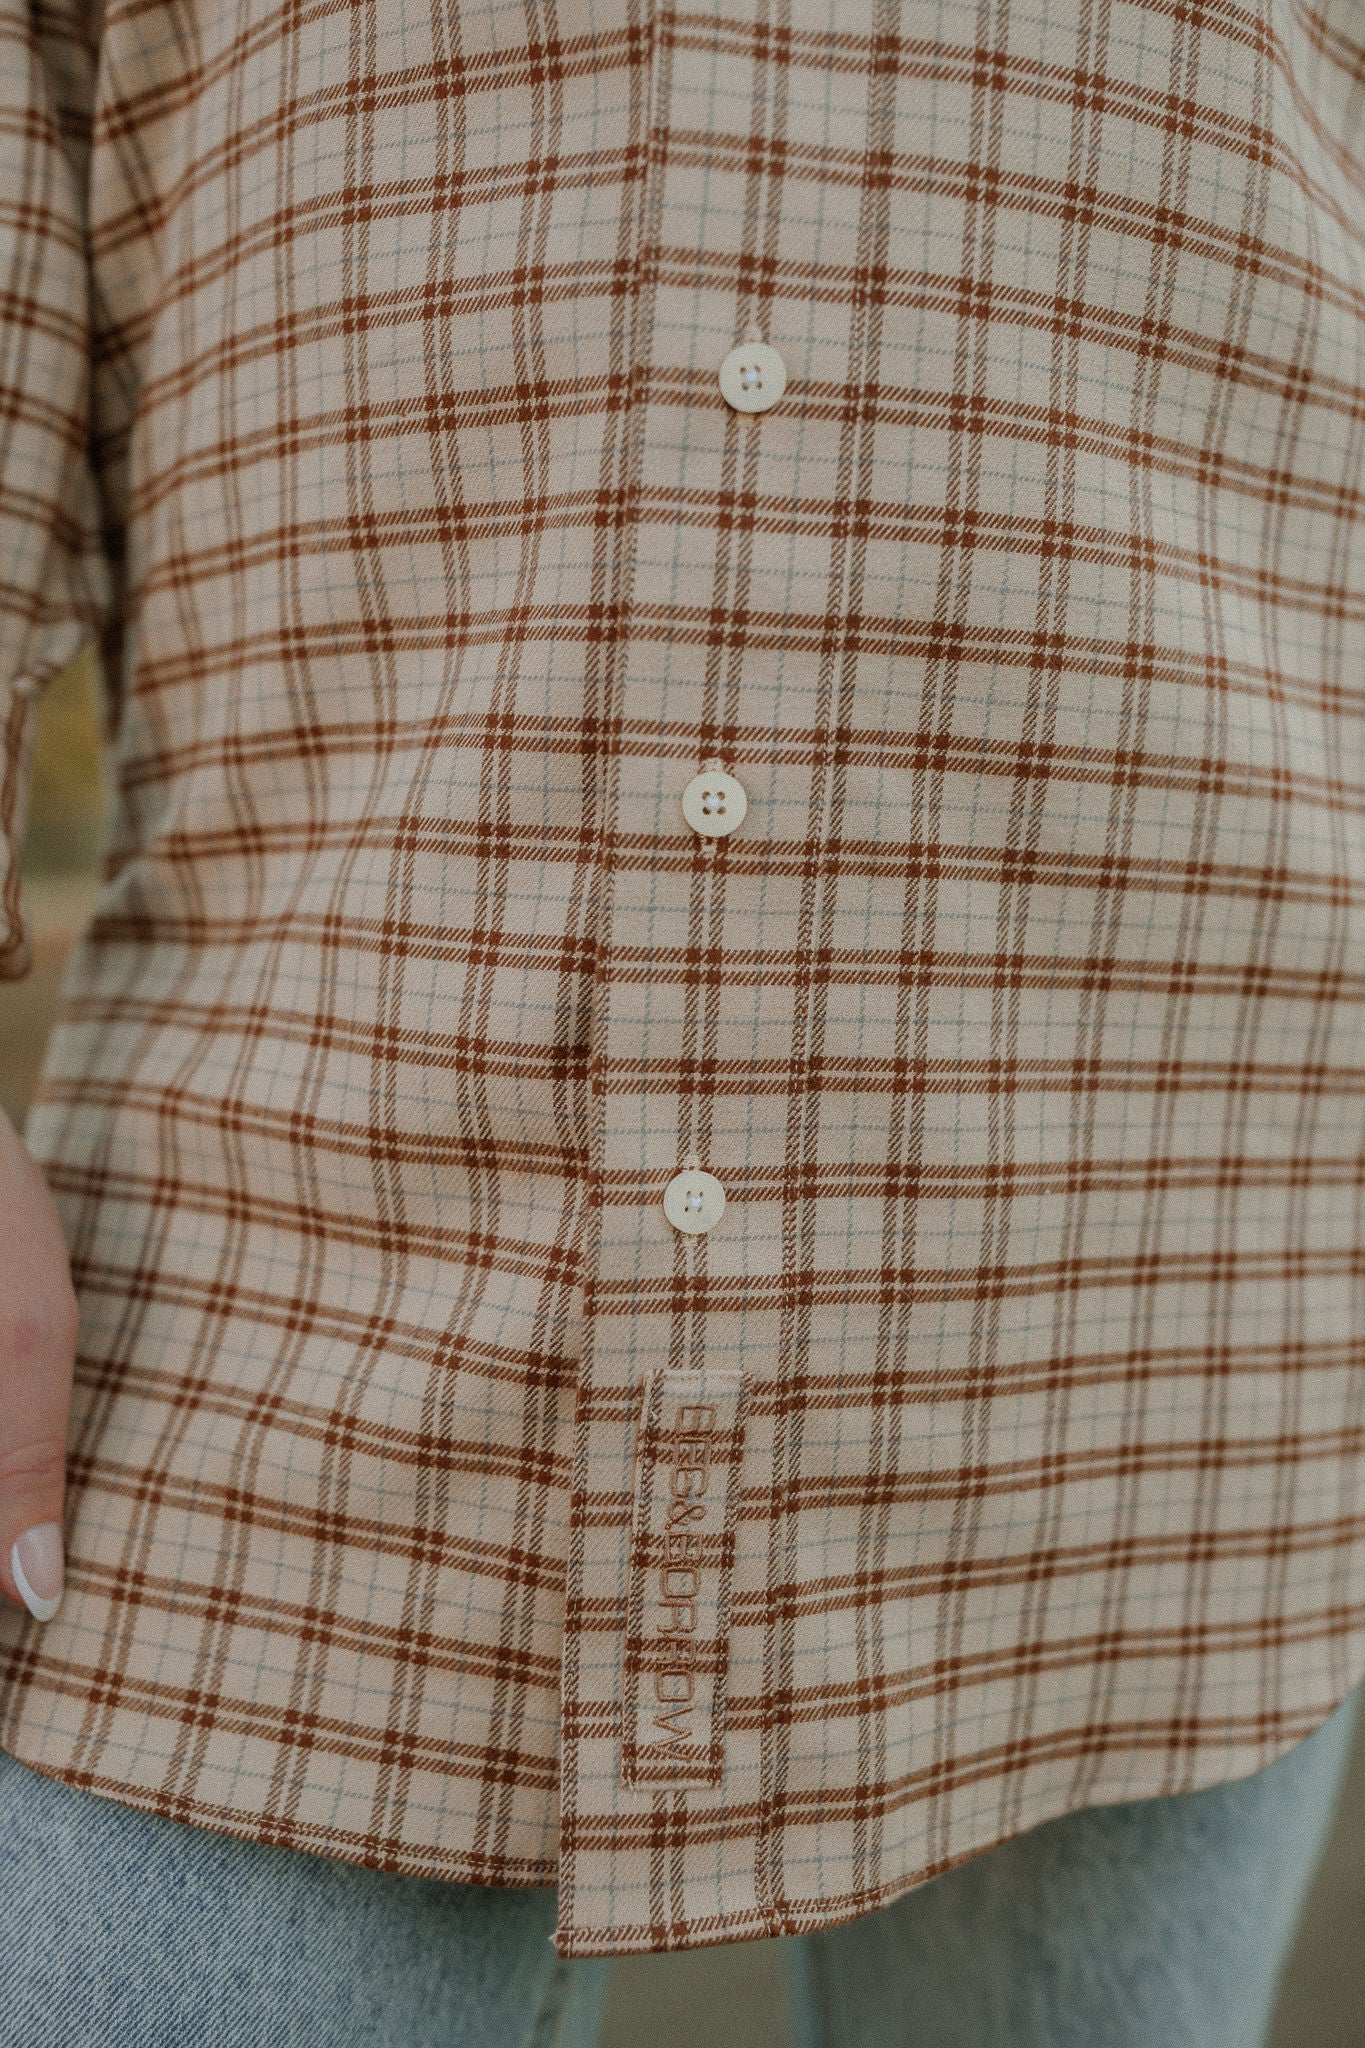 Lauren Boyfriend Shirt - Plaid Flannel